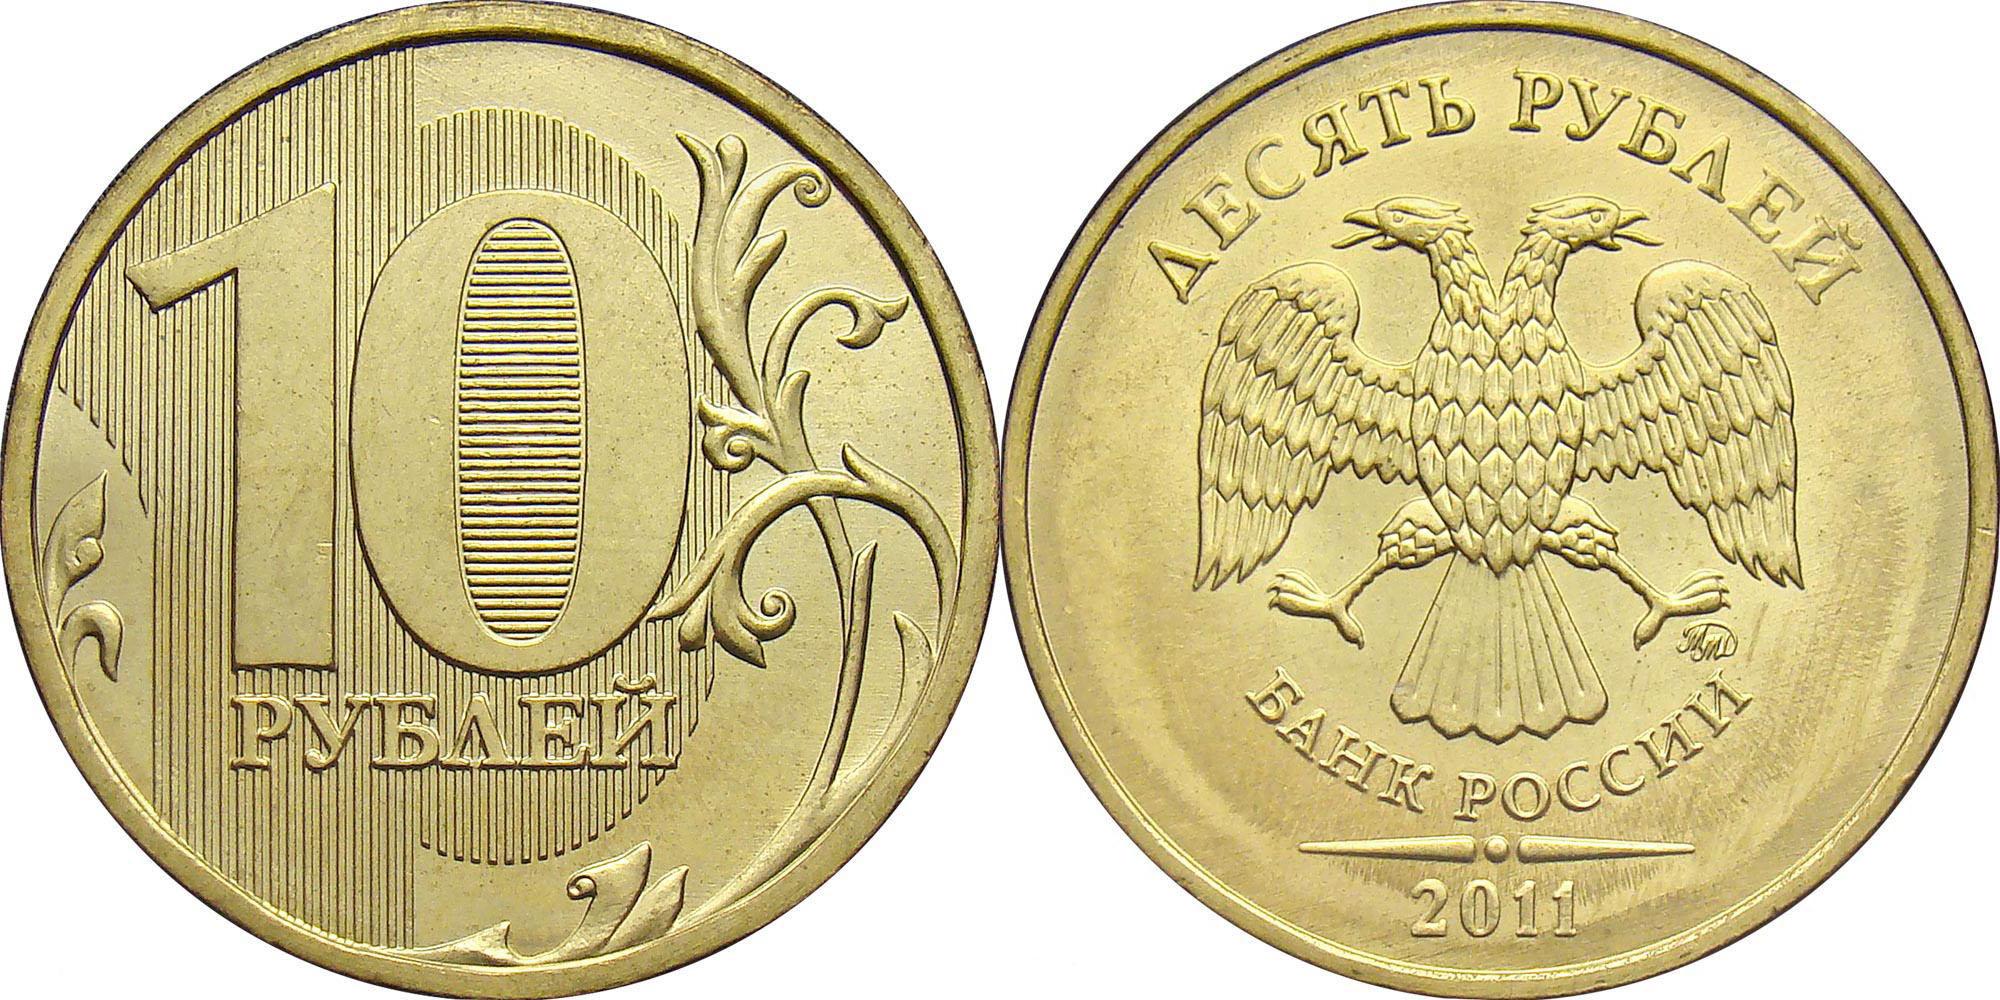 10 рублей 2011 года